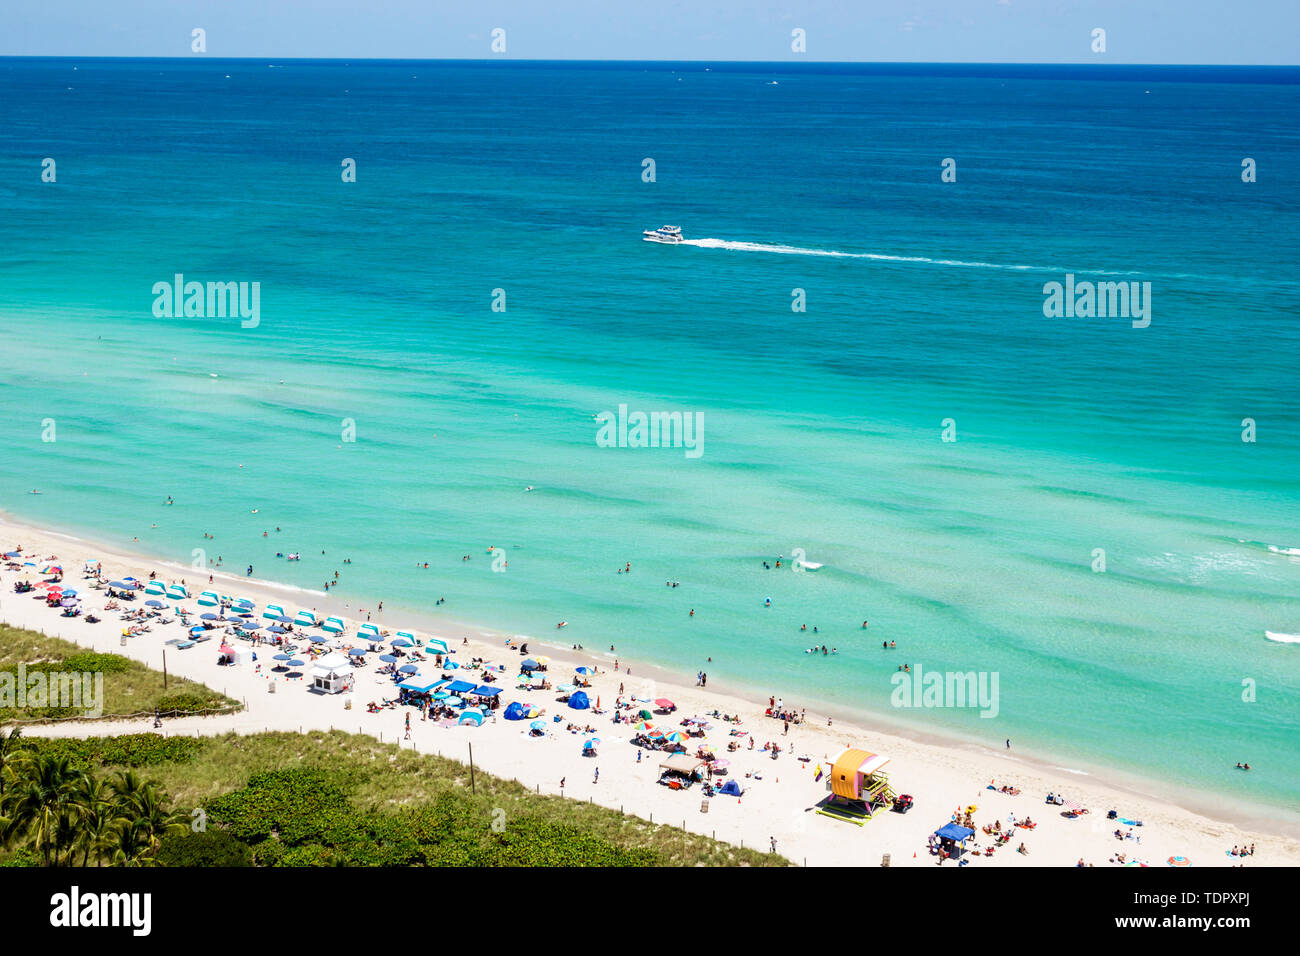 Miami Beach Florida, North Beach, Océan Atlantique, bains de soleil, plage publique, sable, parasols, horizon, vue sur le dessus, eau bleu clair, banc de sable, dunes, bateau, FL19 Banque D'Images